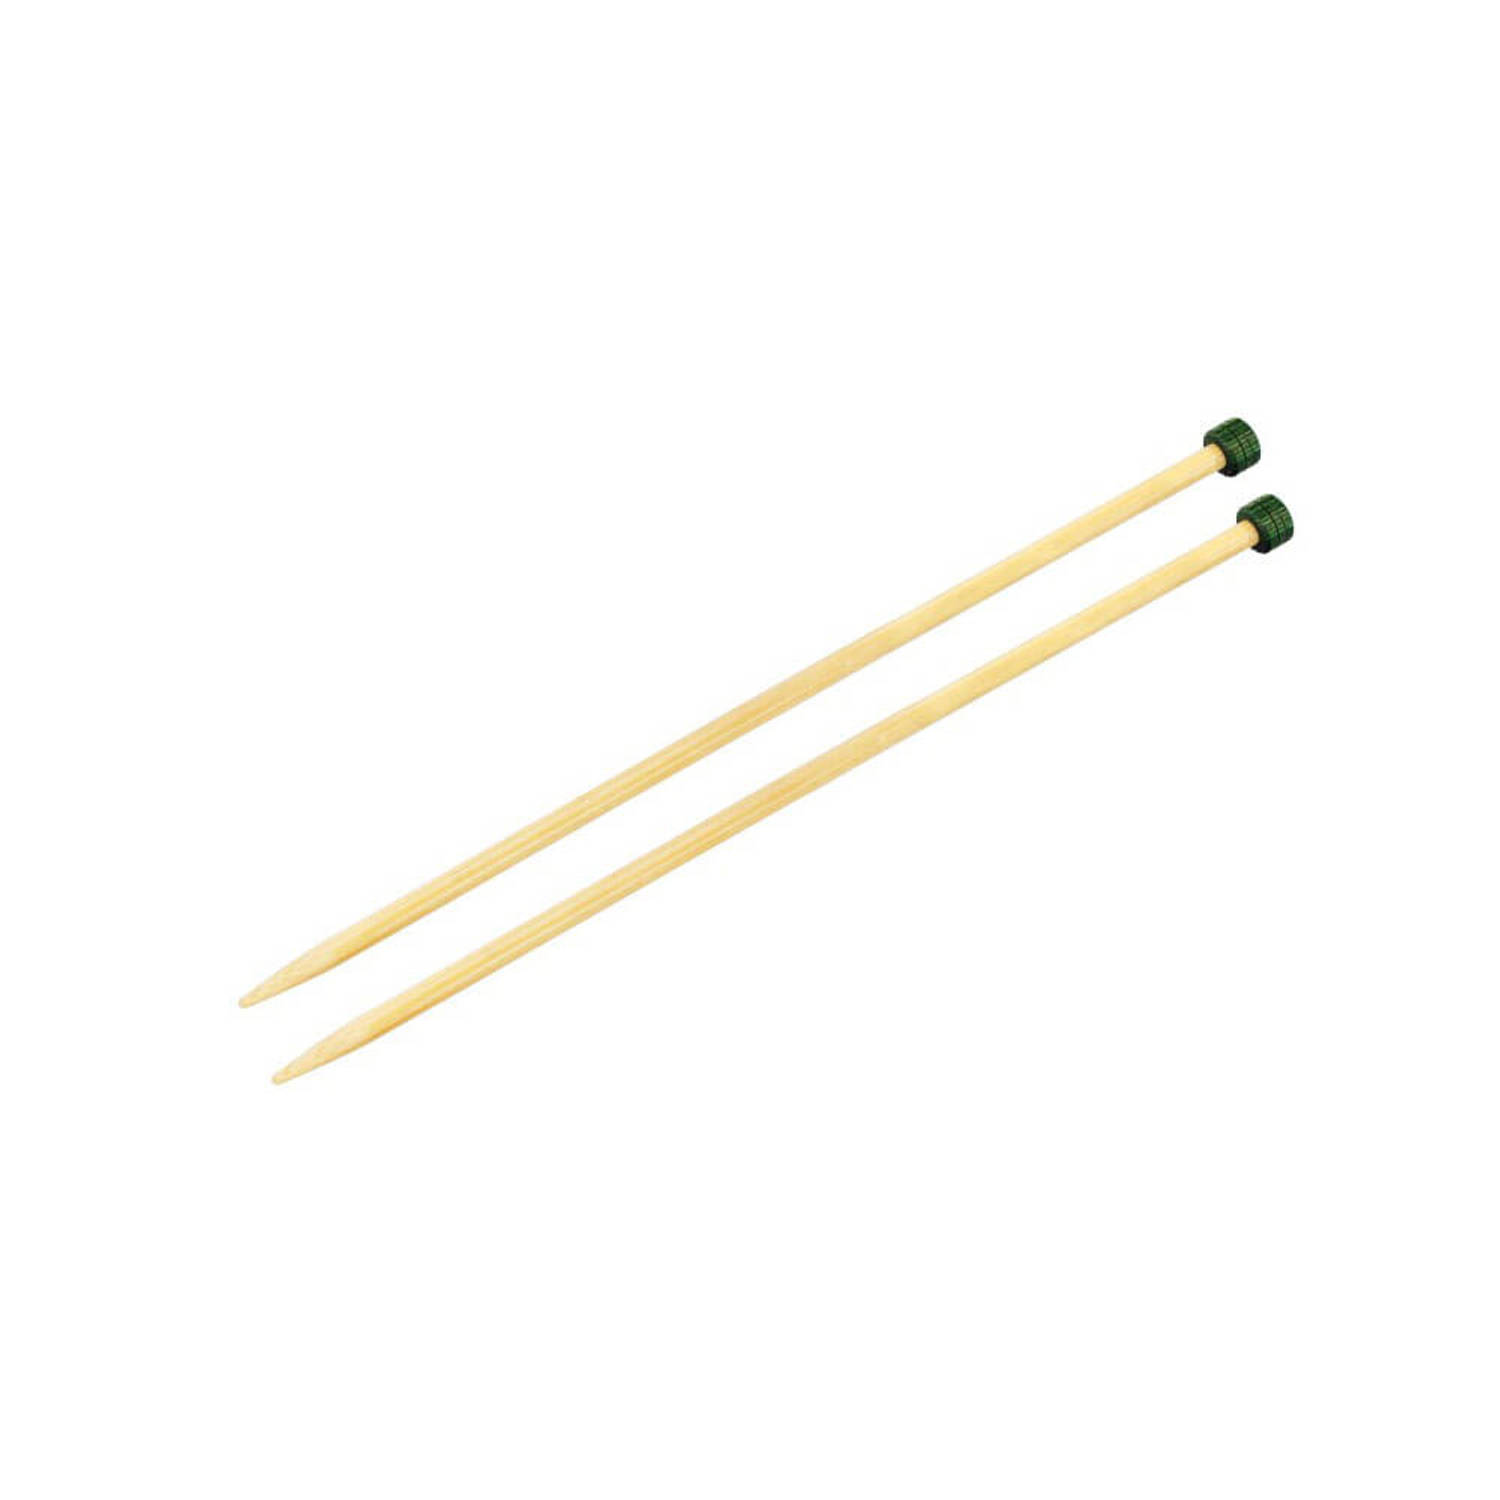 KnitPro Bamboo breinaalden 30cm 10.00mm.